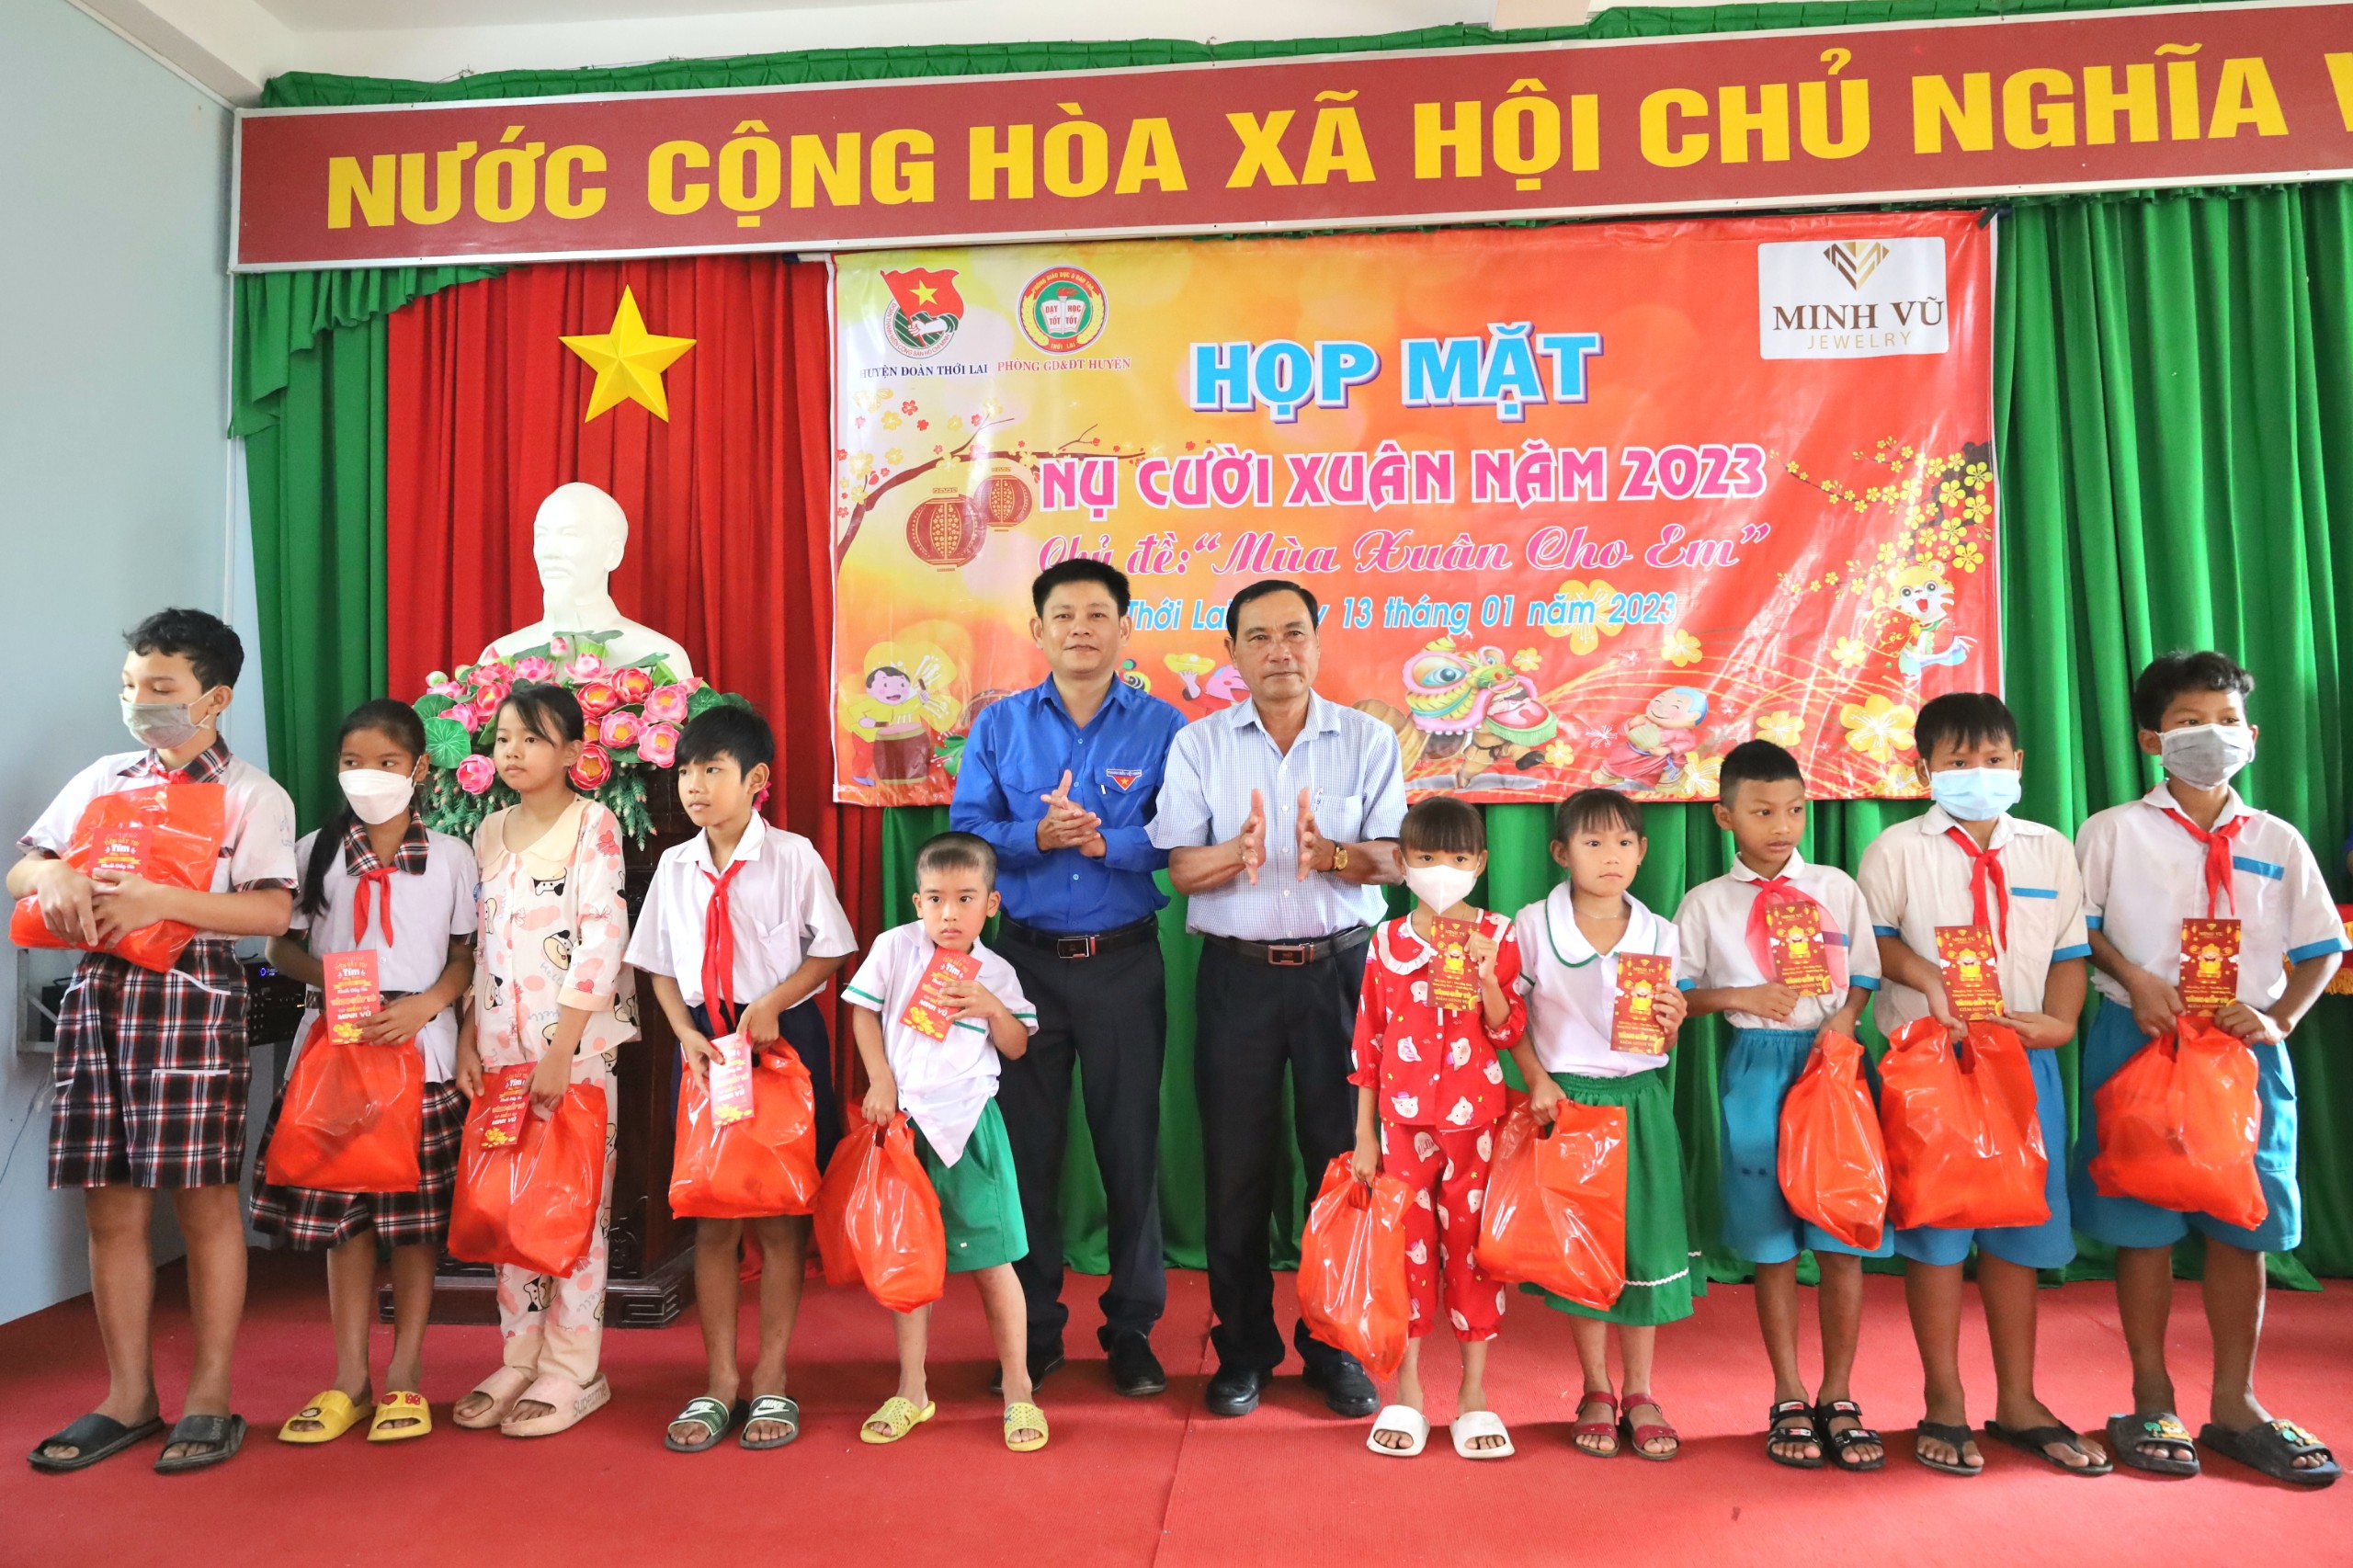 Ông Nguyễn Văn Bé Ba - Phó trưởng Ban dân vận Huyện uỷ Thới Lai và ông Nguyễn Anh Tài - Phó bí thư Huyện đoàn Thới Lai trao quà cho các em thiếu nhi.